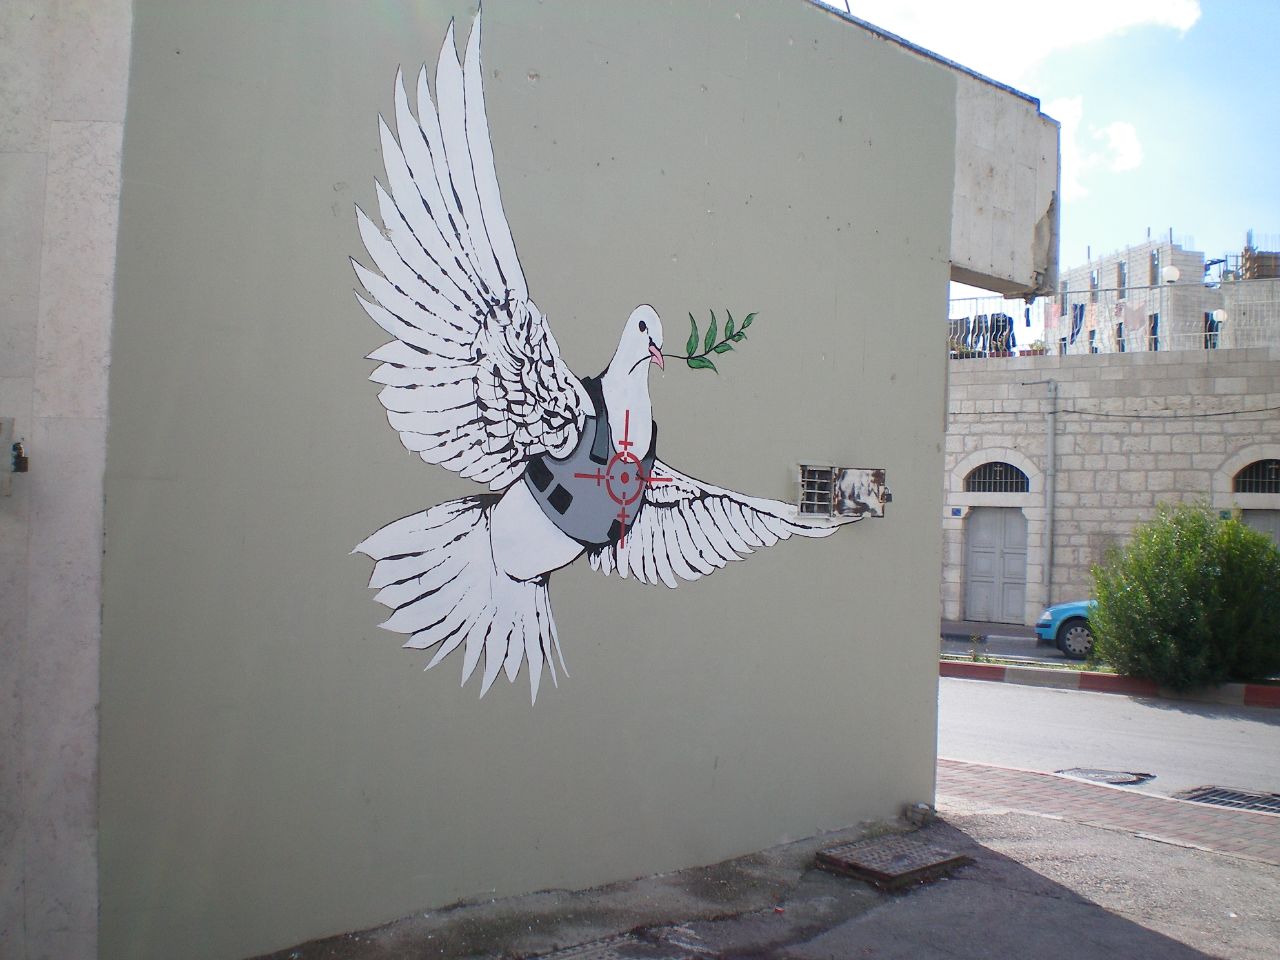 Auf dem Bild ist ein Graffiti von Banksy zu sehen, an einer Hauswand